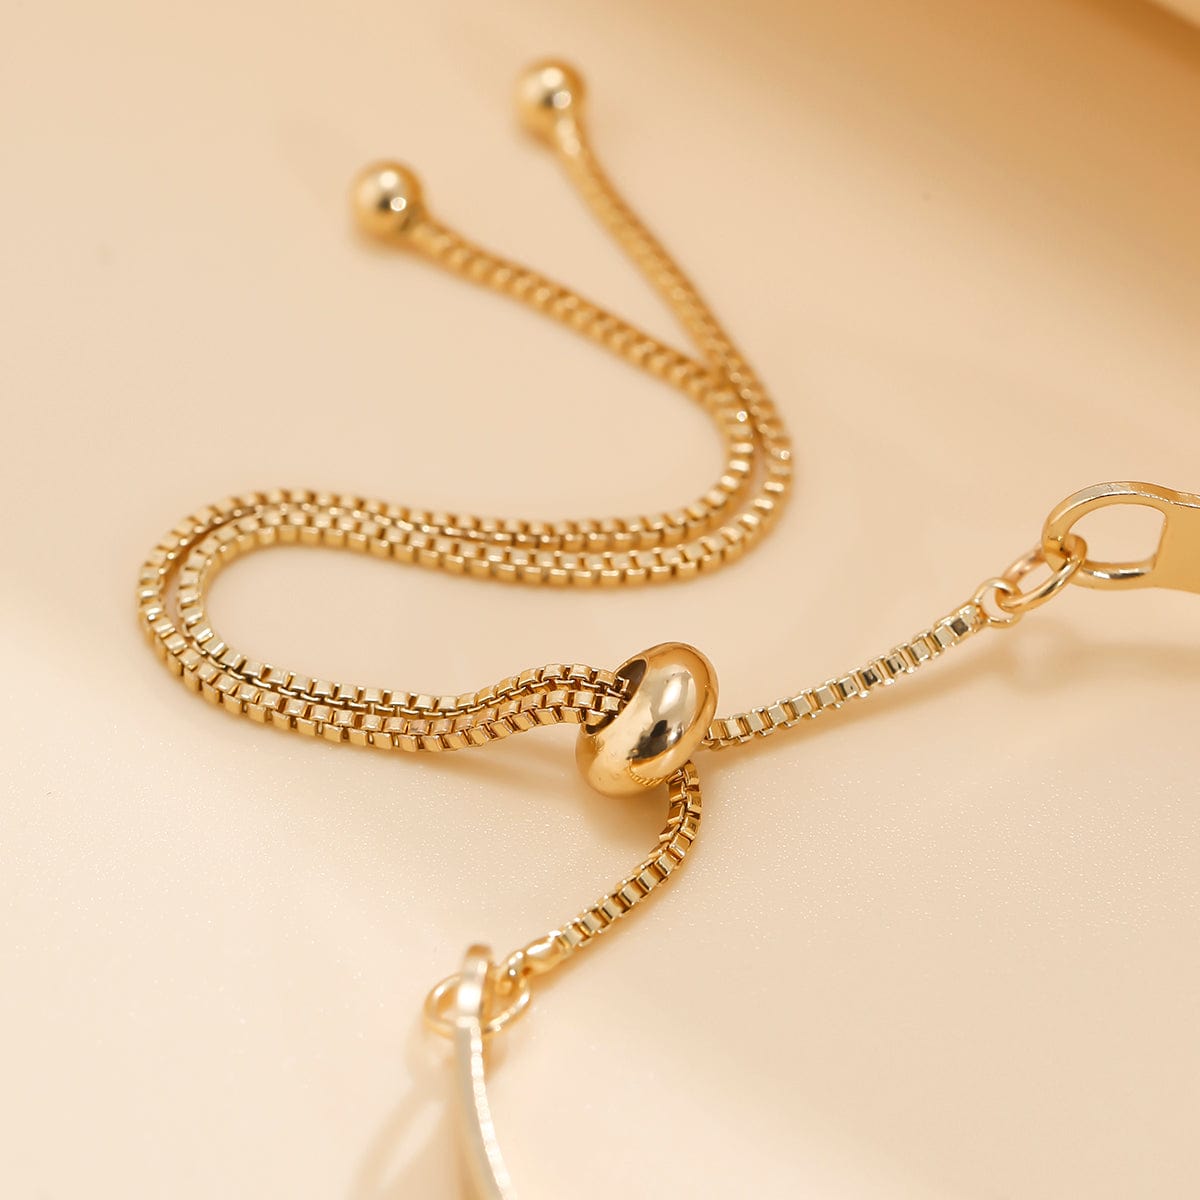 Minimalist Gold Silver Tone Tiny Ball Charm Bangle Bracelet - ArtGalleryZen